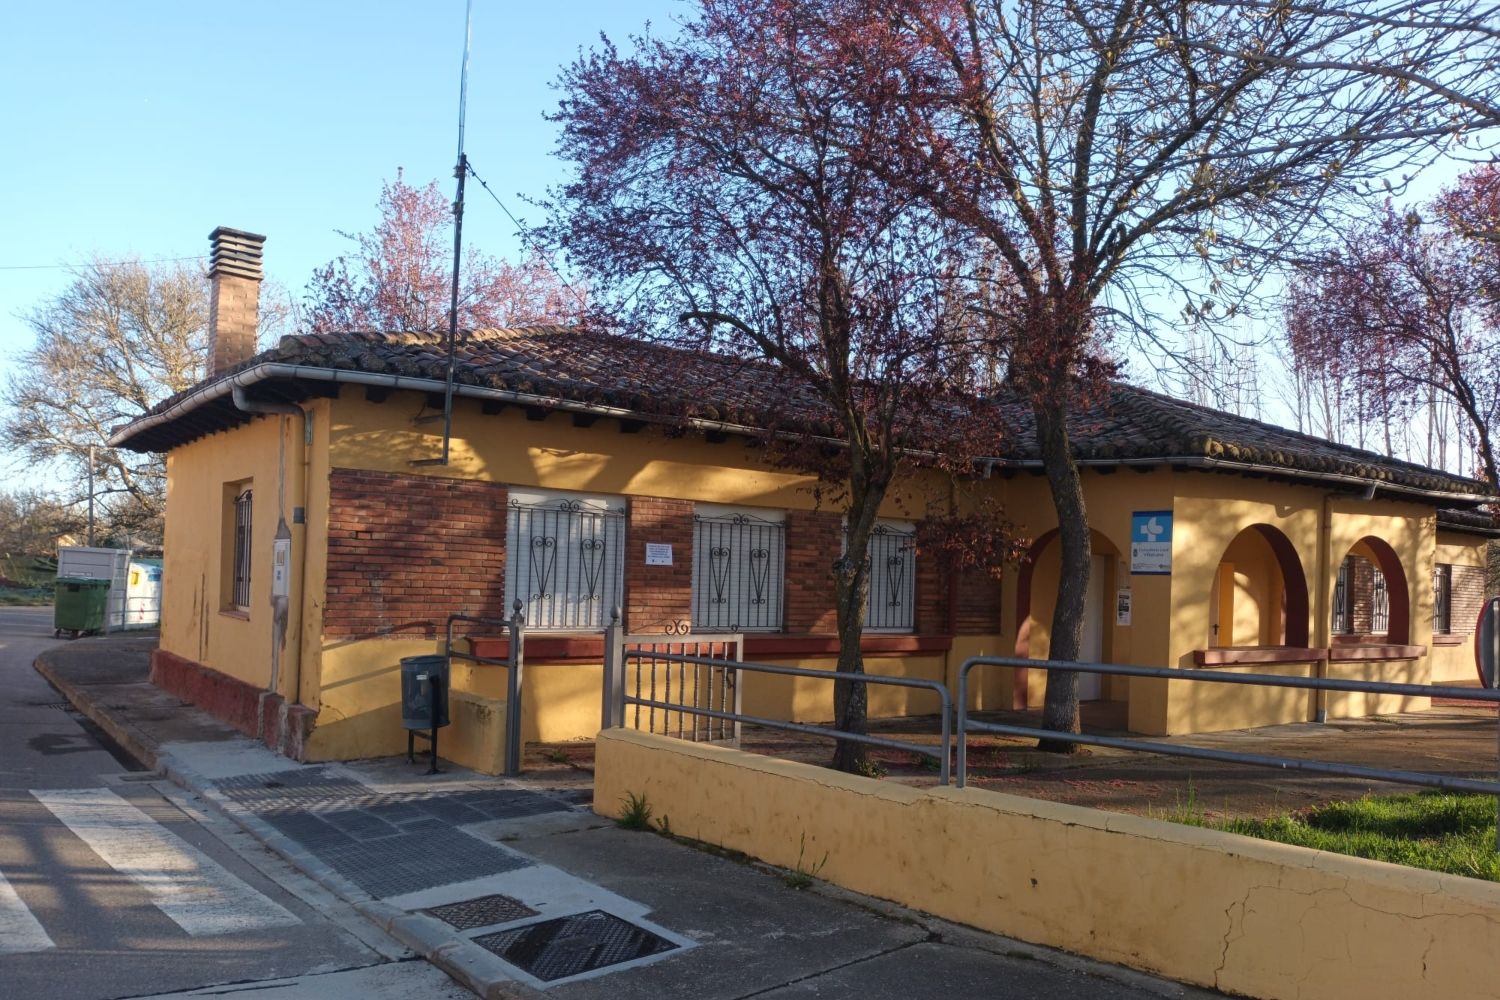 Reapertura el consultorio médico de Villanueva del Árbol (León) tras siete meses cerrado 